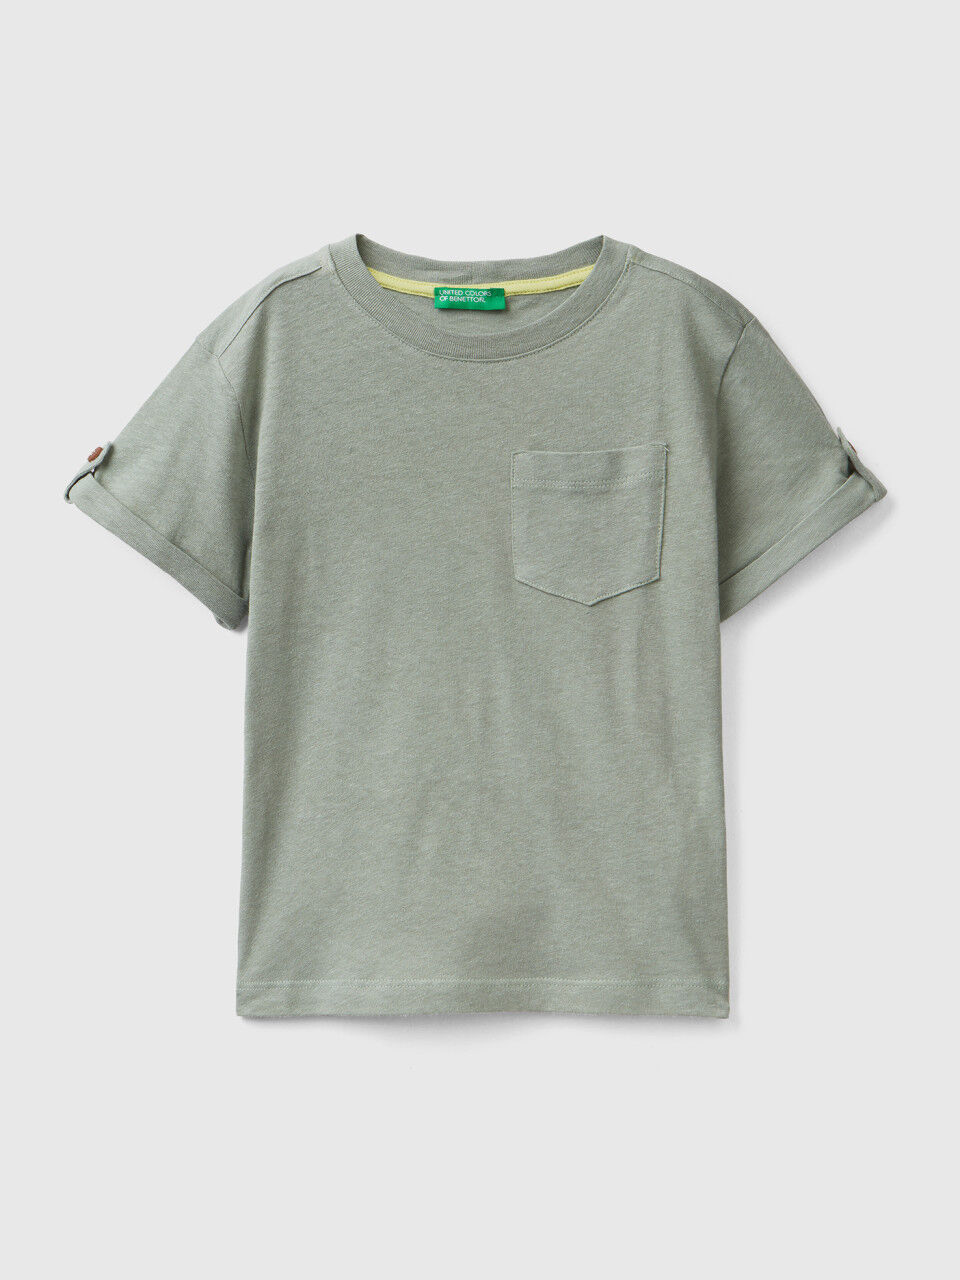 Linen blend t-shirt with pocket